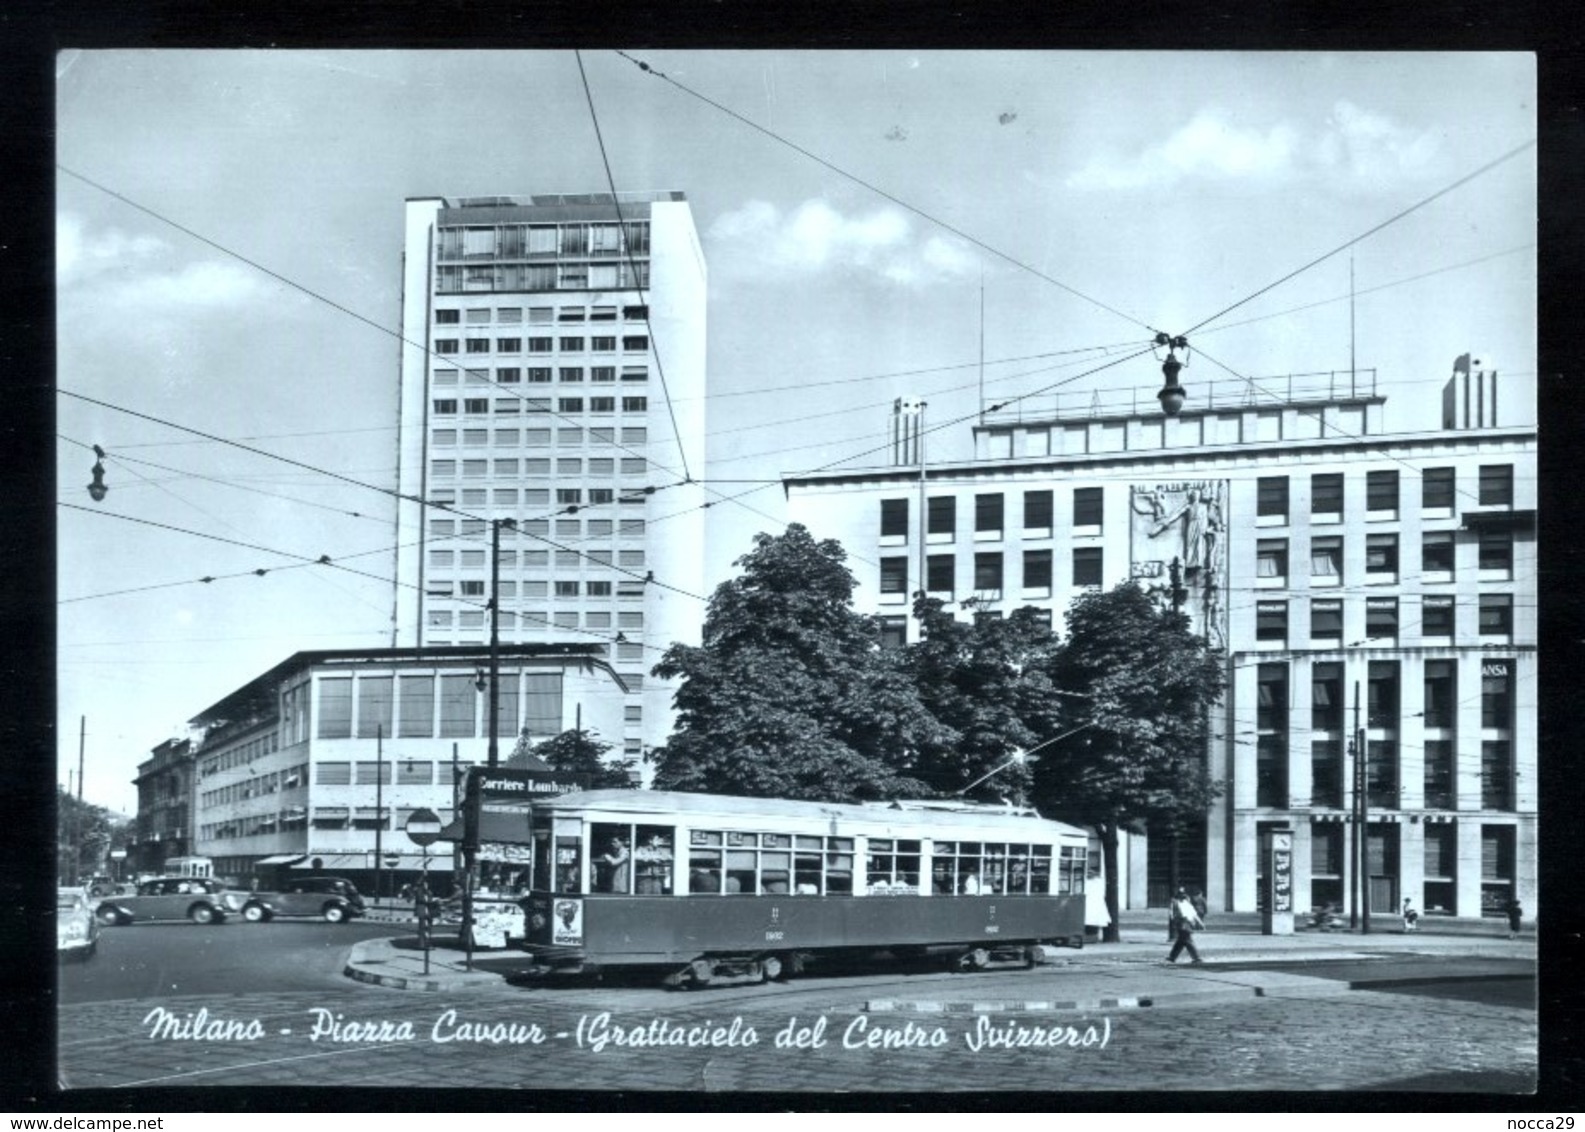 MILANO - 1952 - PIAZZA CAVOUR CON TRAM - GRATTACIELO DEL CENTRO SVIZZERO - Milano (Milan)